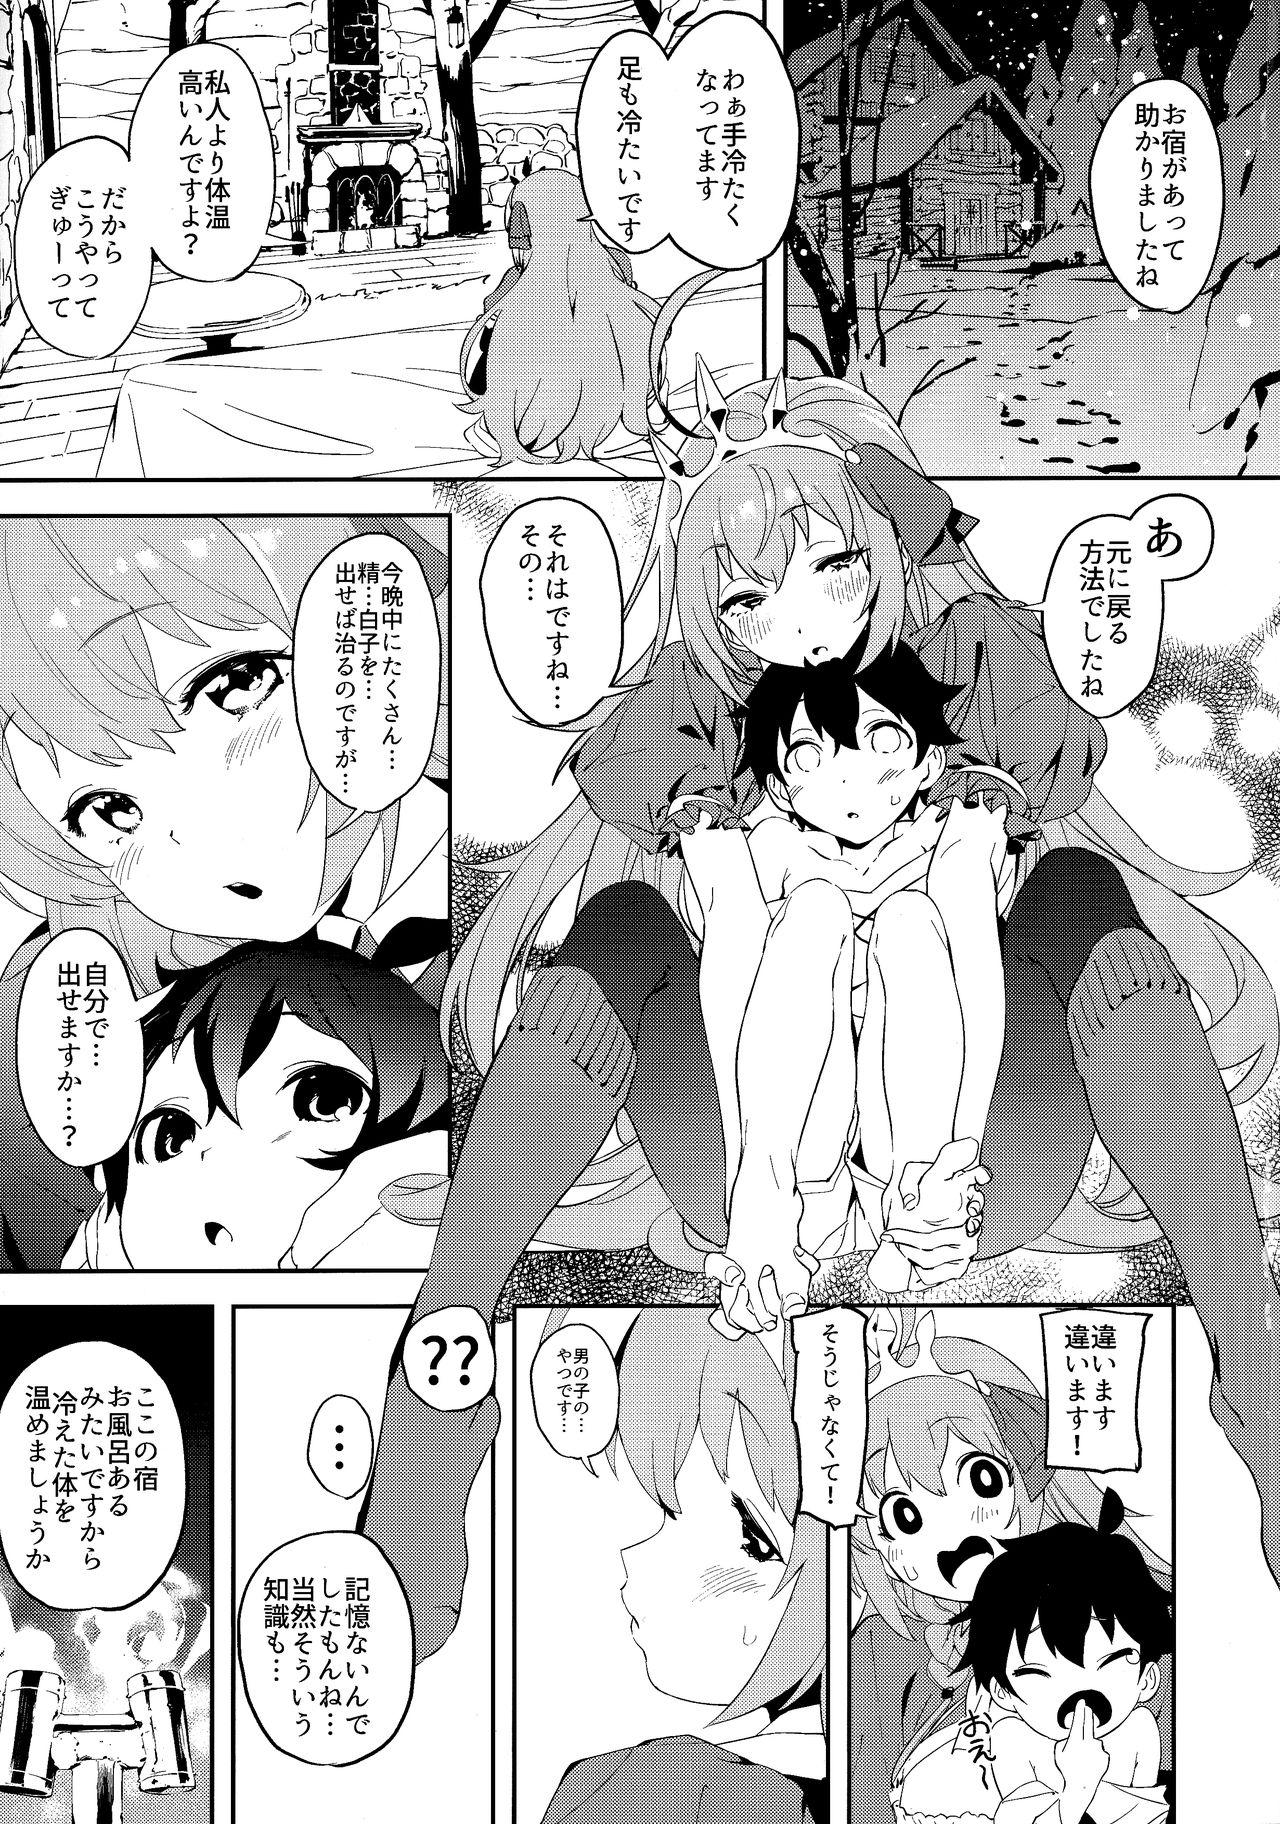  Pecorine to Shota Kishi-kun - Princess connect Trap - Page 4